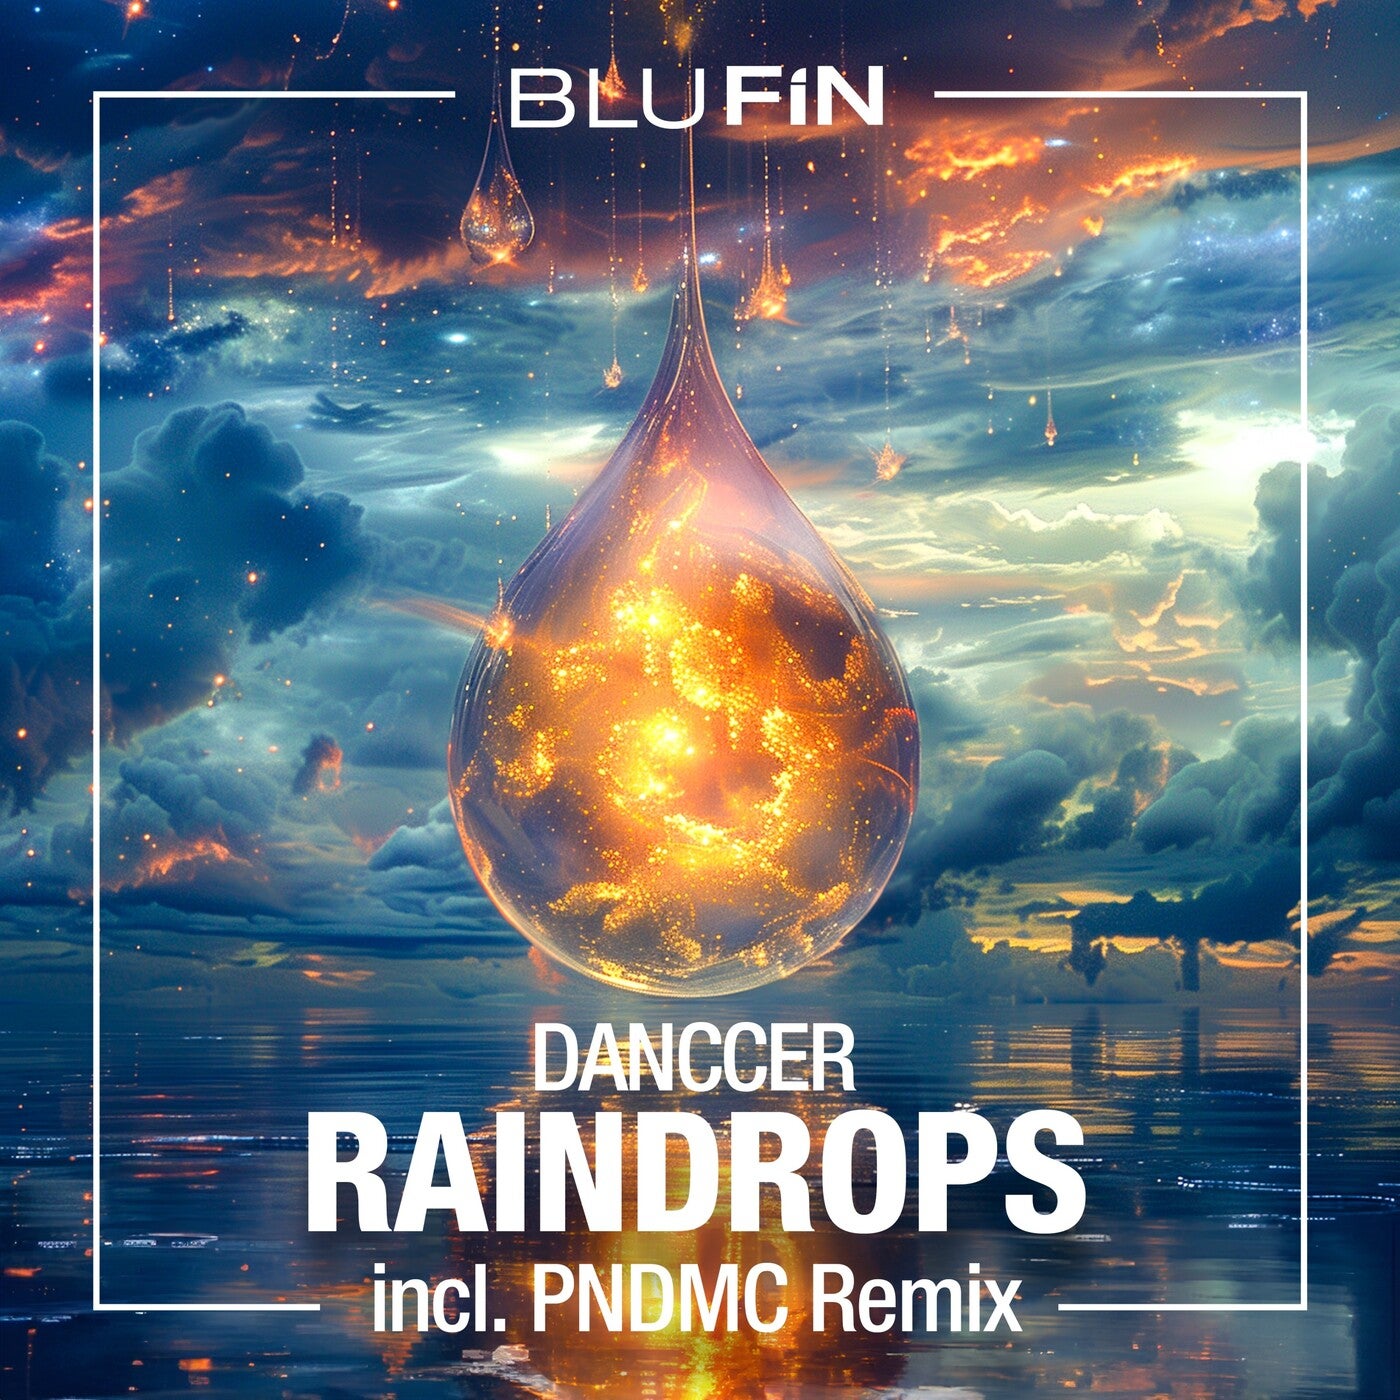 Raindrops (The Remixes)